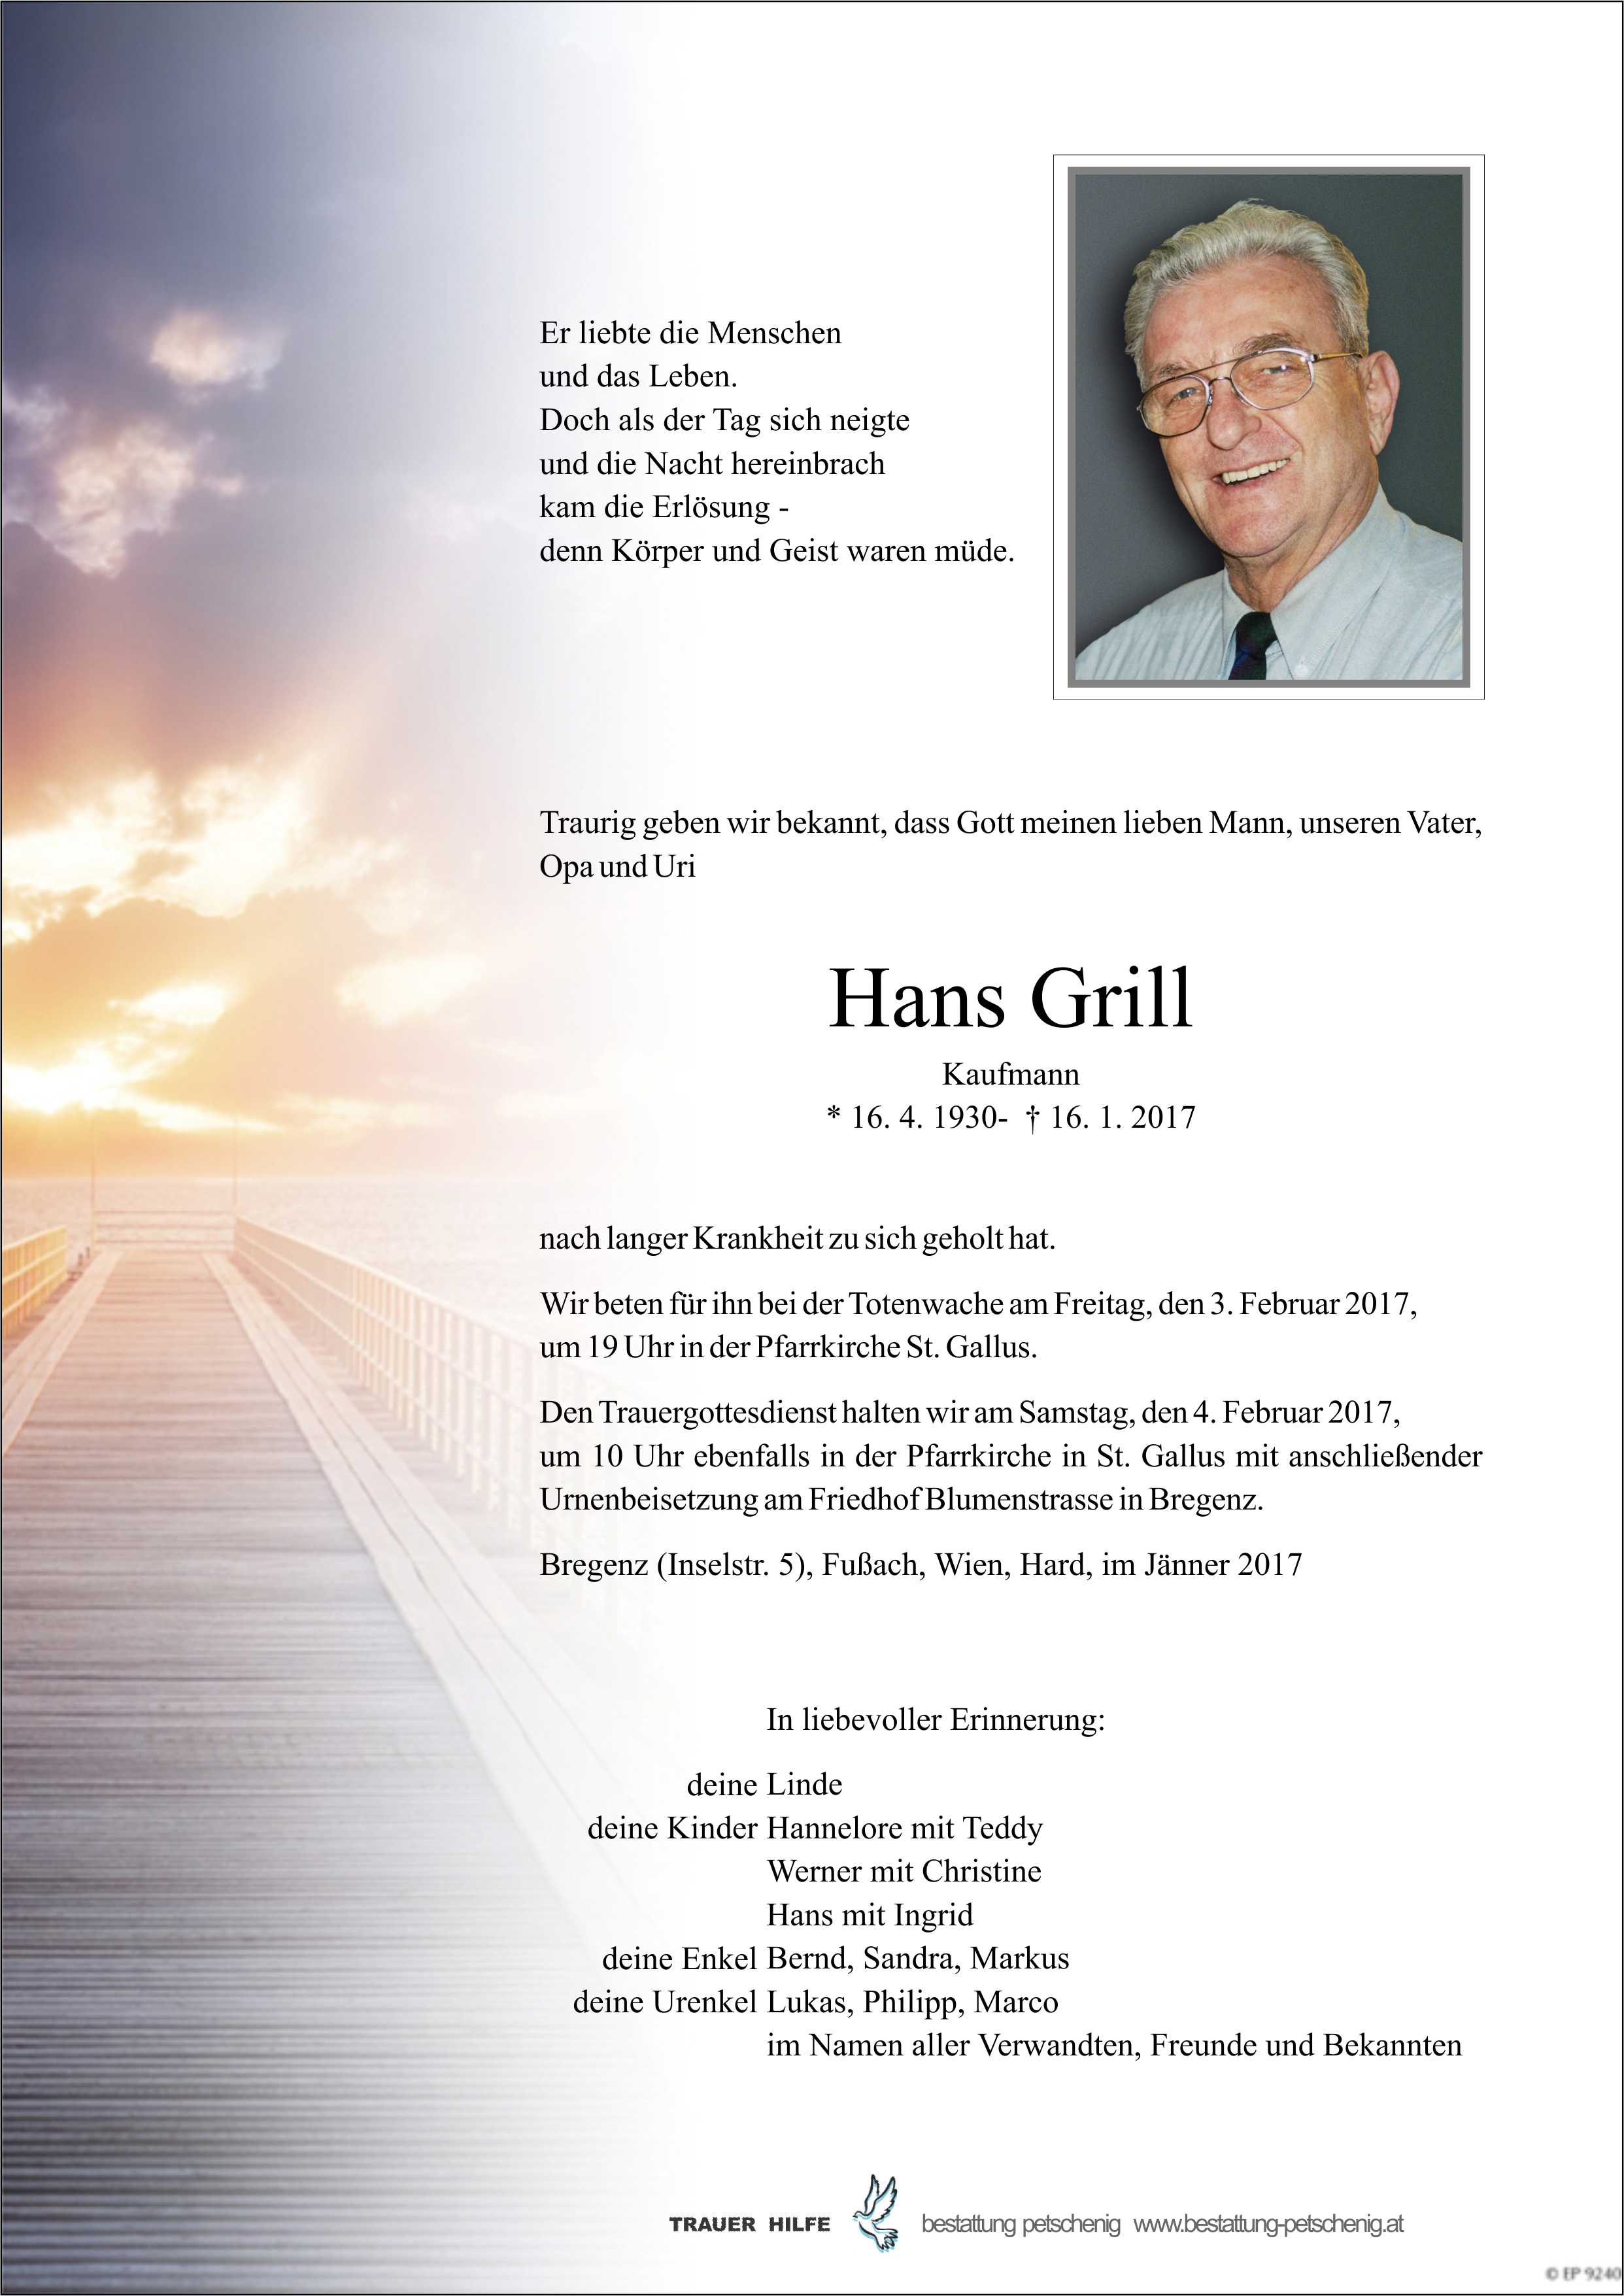 Hans Grill